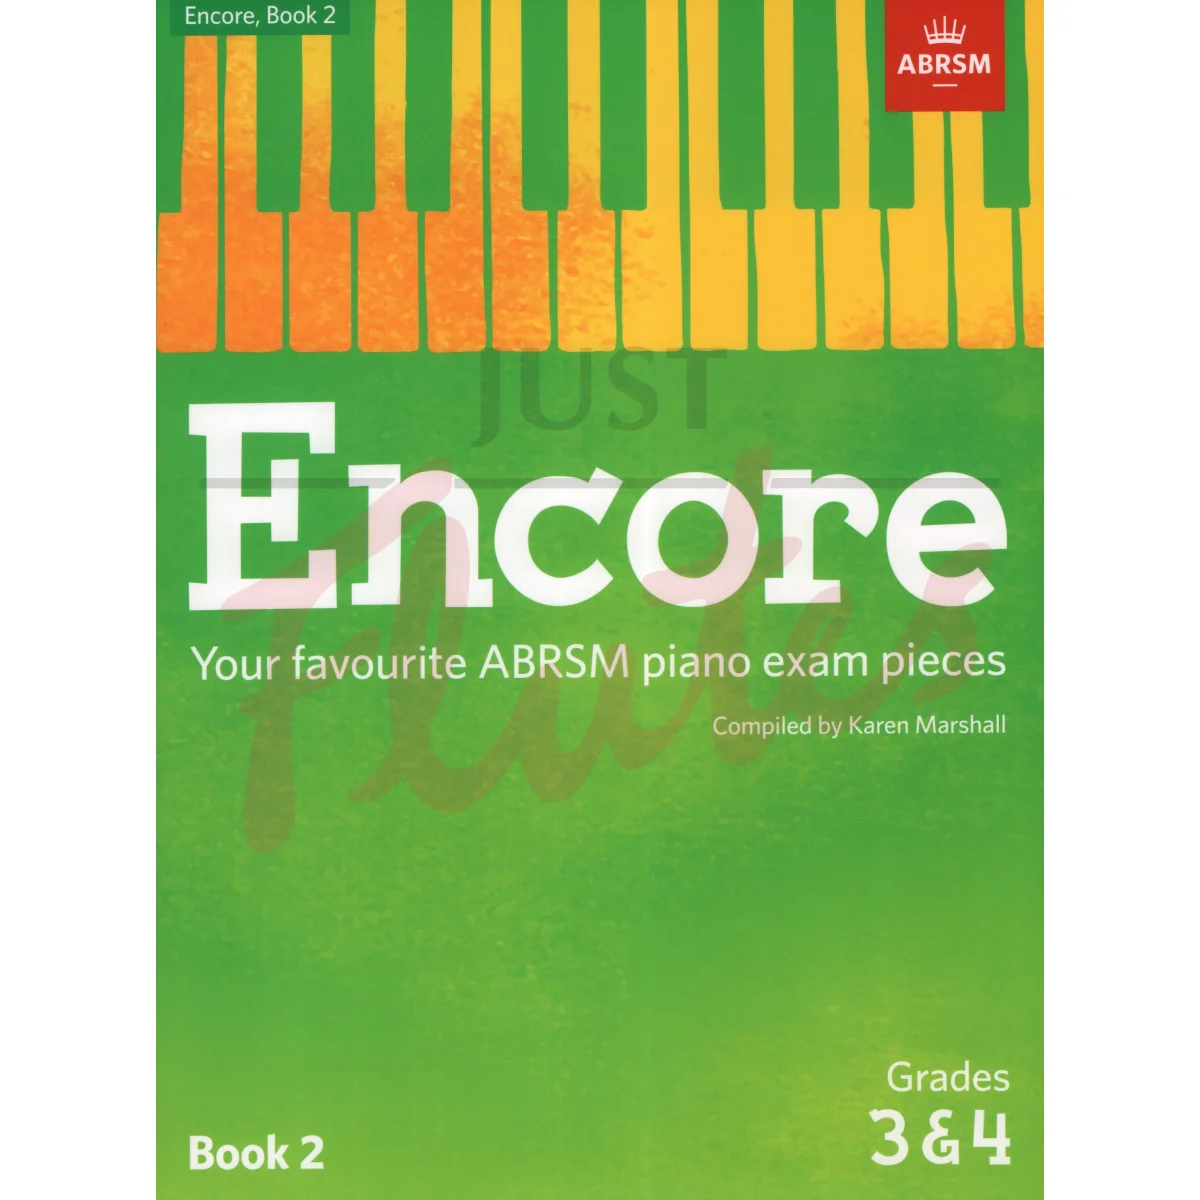 Encore - Favourite ABRSM Piano Exam Pieces Book 2